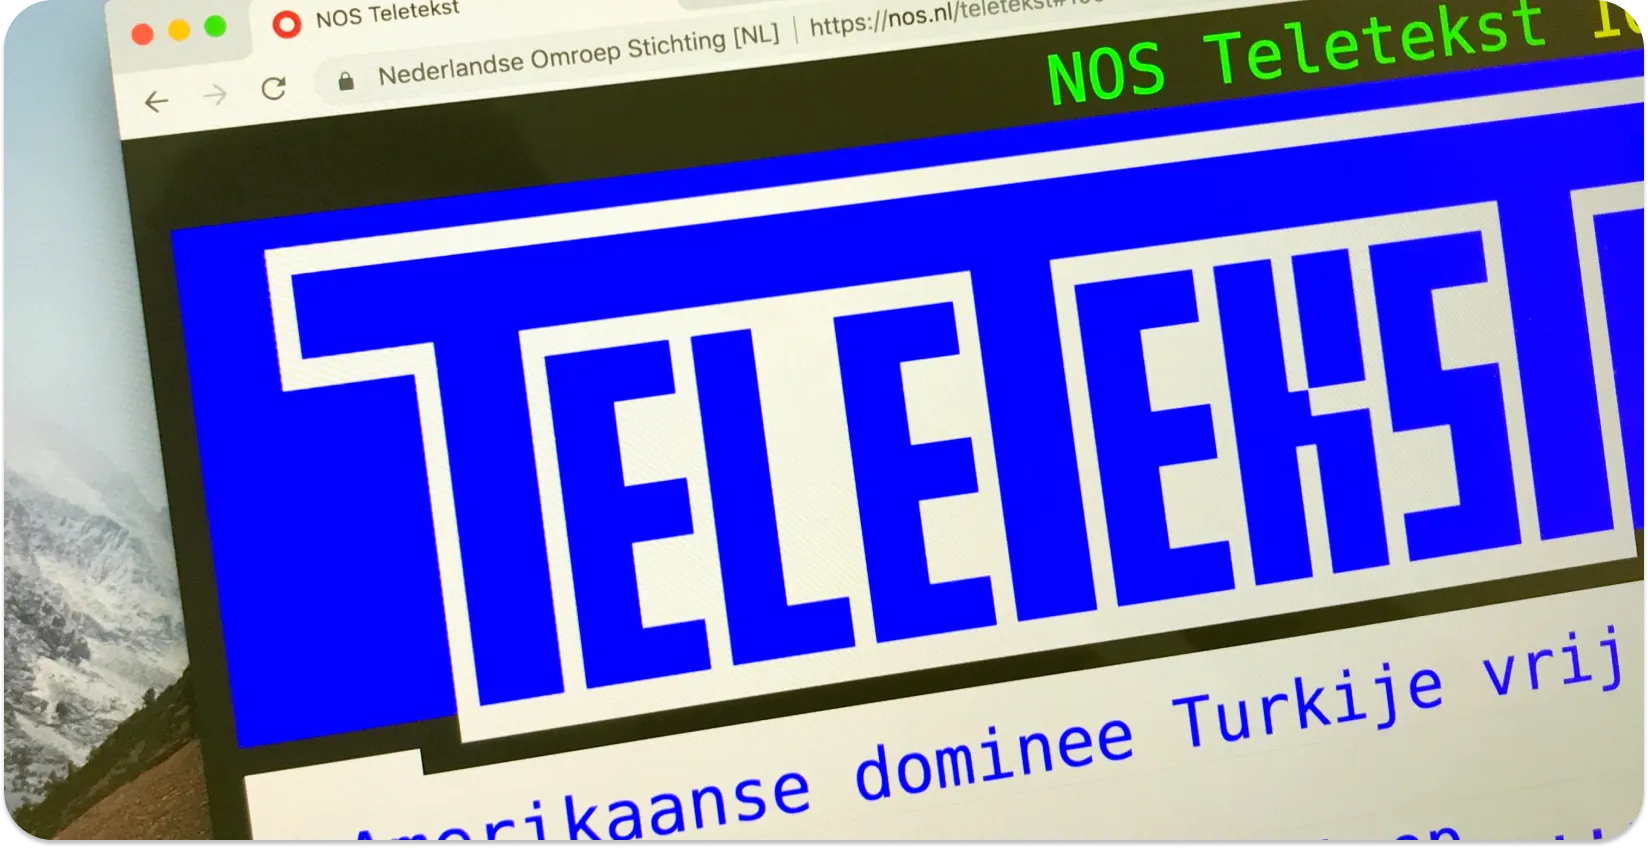 뉴스 헤드라인과 함께 텔레텍스트 자막을 표시하는 컴퓨터 화면으로서, 텔레텍스트 자막 형식을 예시한다.